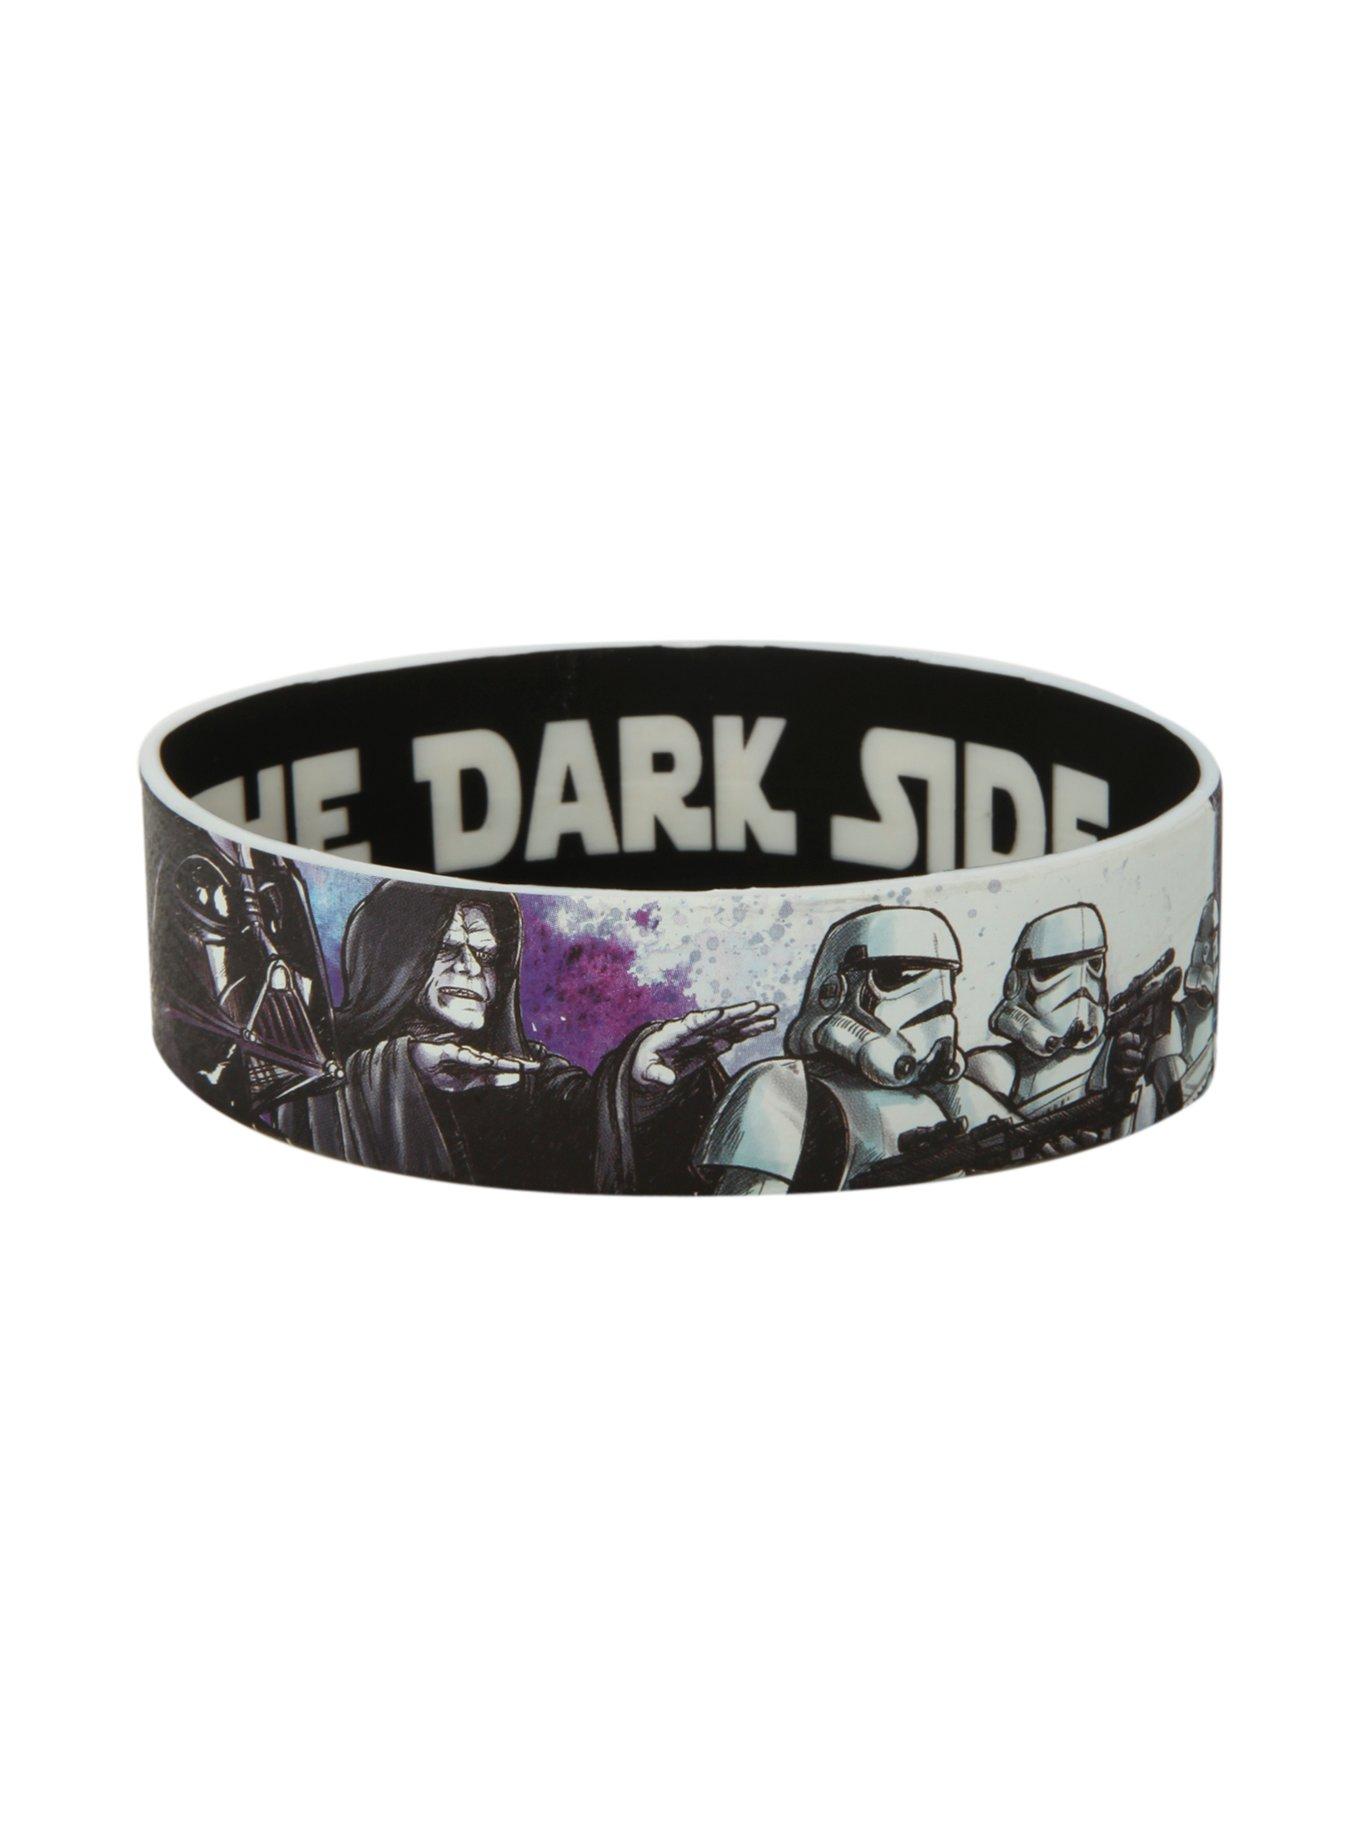 Star Wars Dark Side Rubber Bracelet, , hi-res